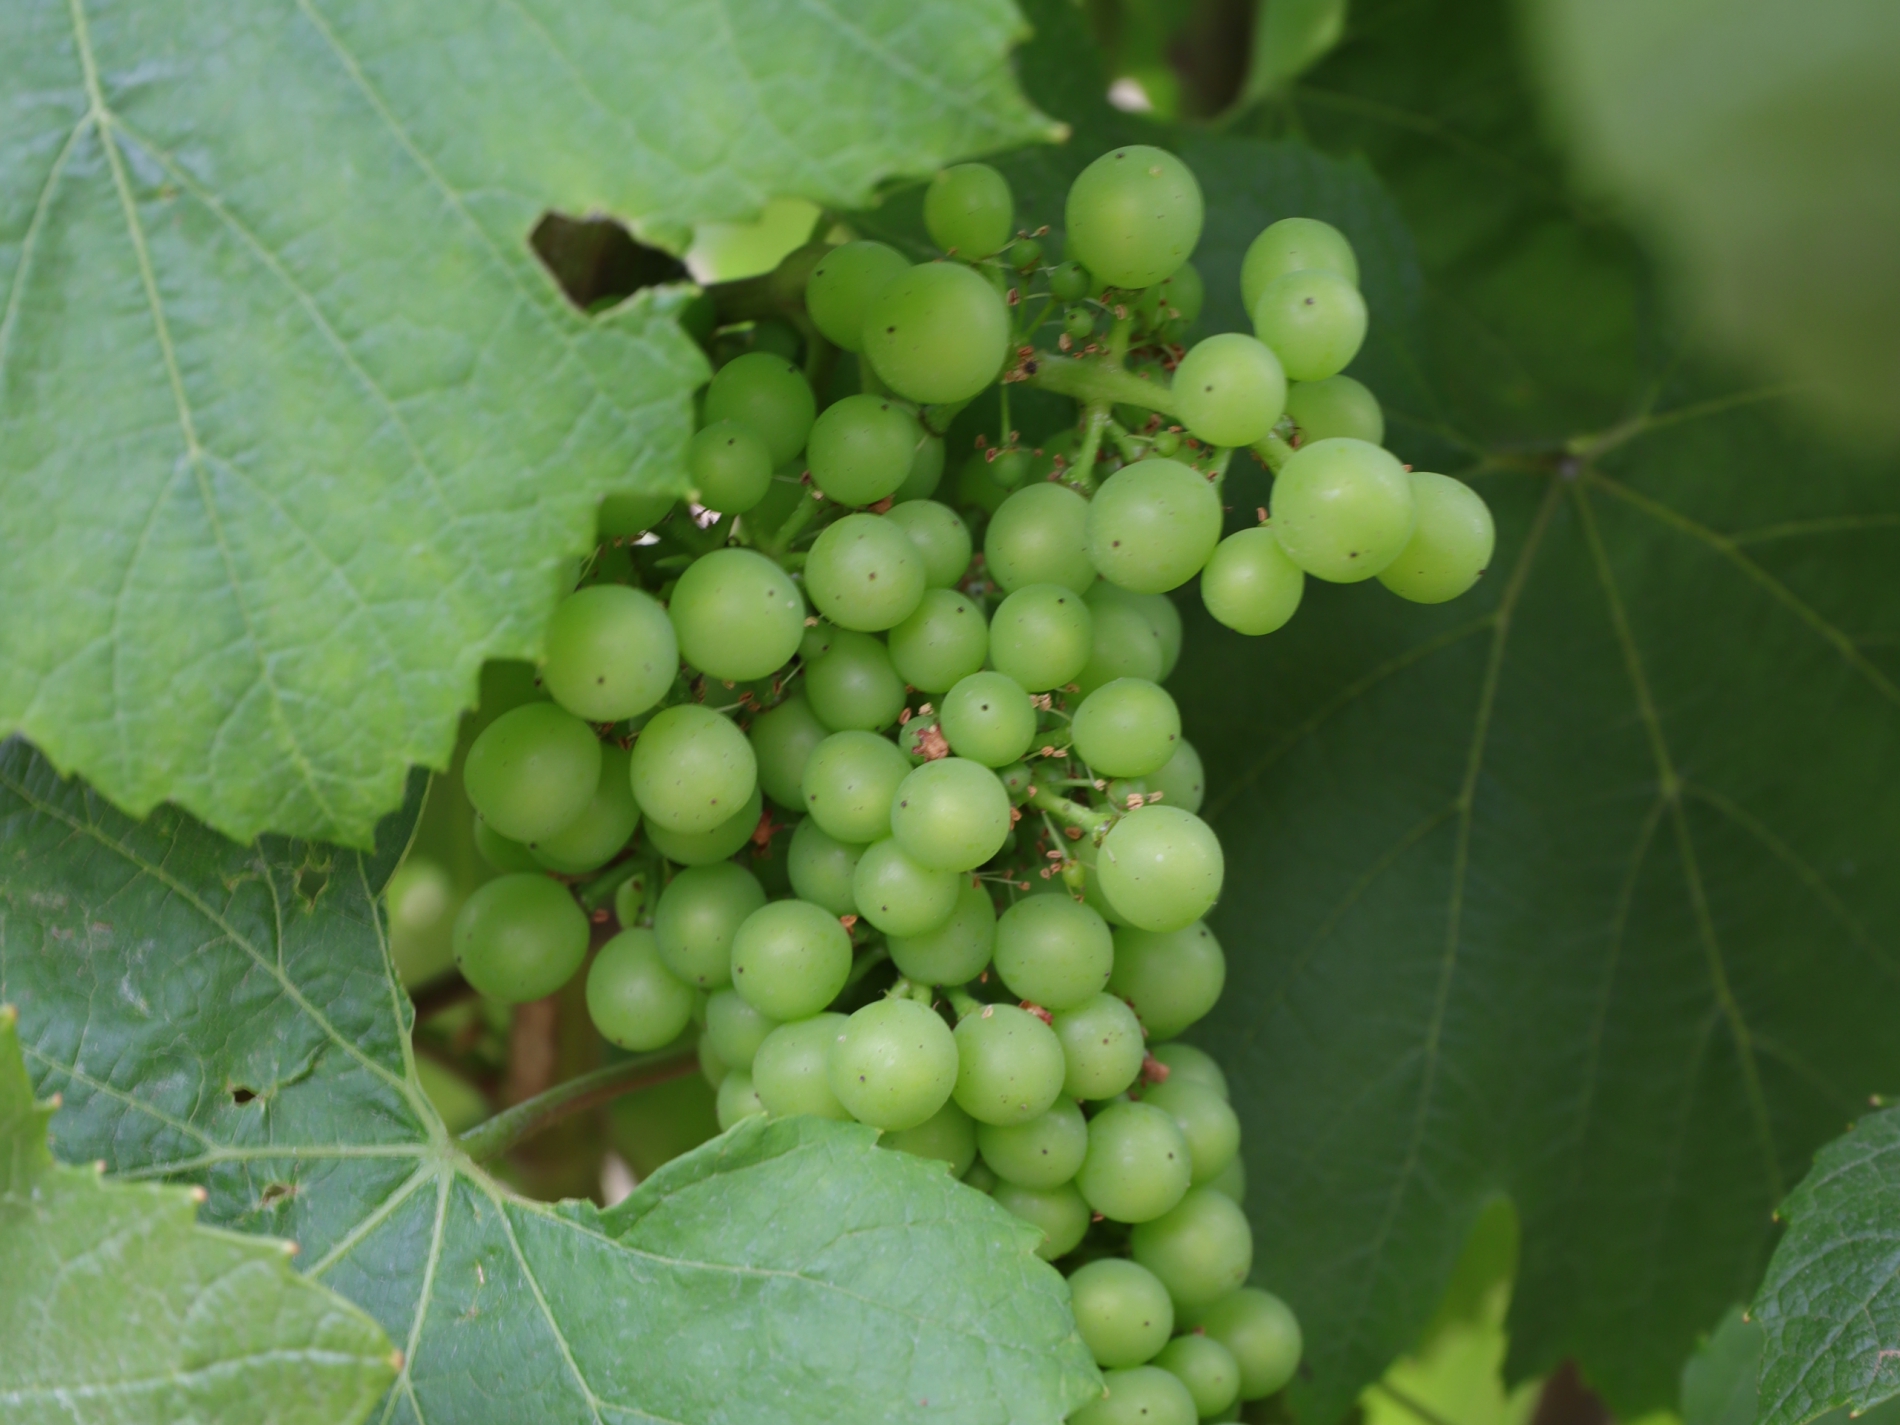 Organic viticulture is gaining terrain